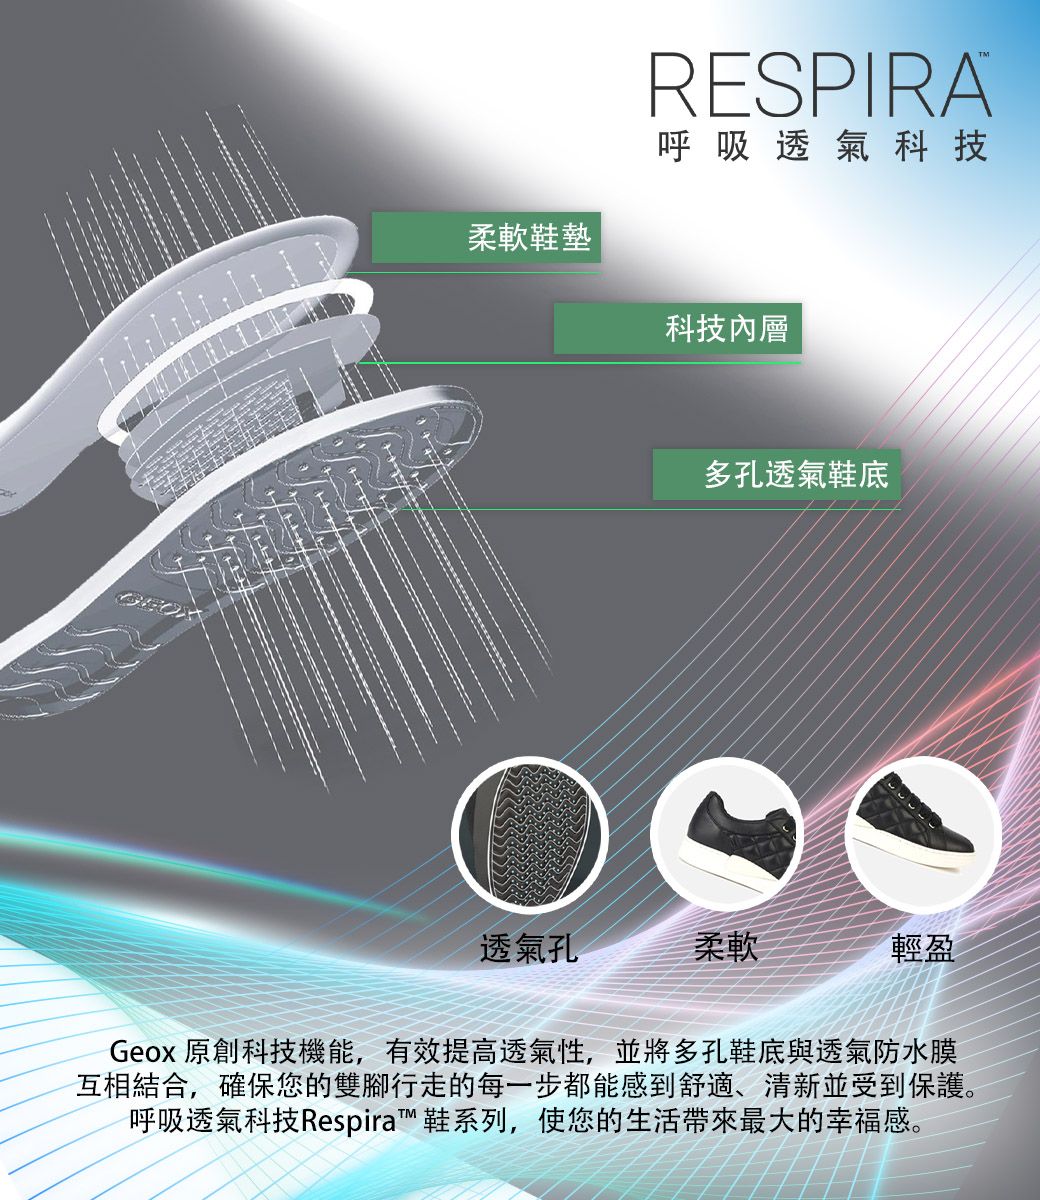 柔軟鞋墊RESPIRA呼吸透氣科技科技內層多孔透氣鞋底透氣孔柔軟輕盈Geox 原創科技機能,有效提高透氣性,並將多孔鞋底與透氣防水膜互相結合,確保您的雙腳行走的每一步都能感到舒適、清新並受到保護。呼吸透氣科技Respira™鞋系列,使您的生活最大的幸福感。